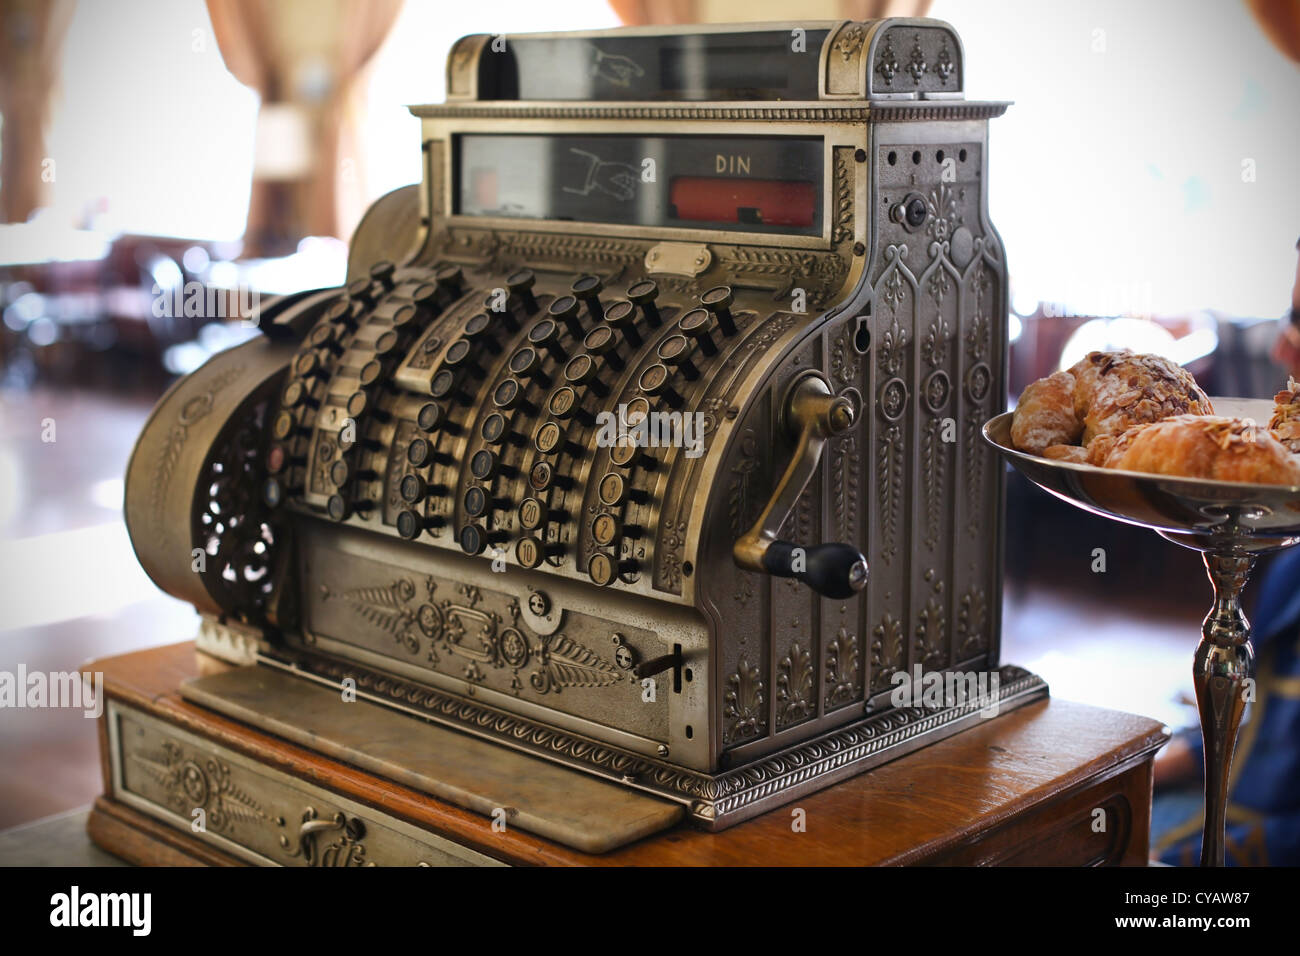 Caisse enregistreuse antique dans un coffee shop Photo Stock - Alamy